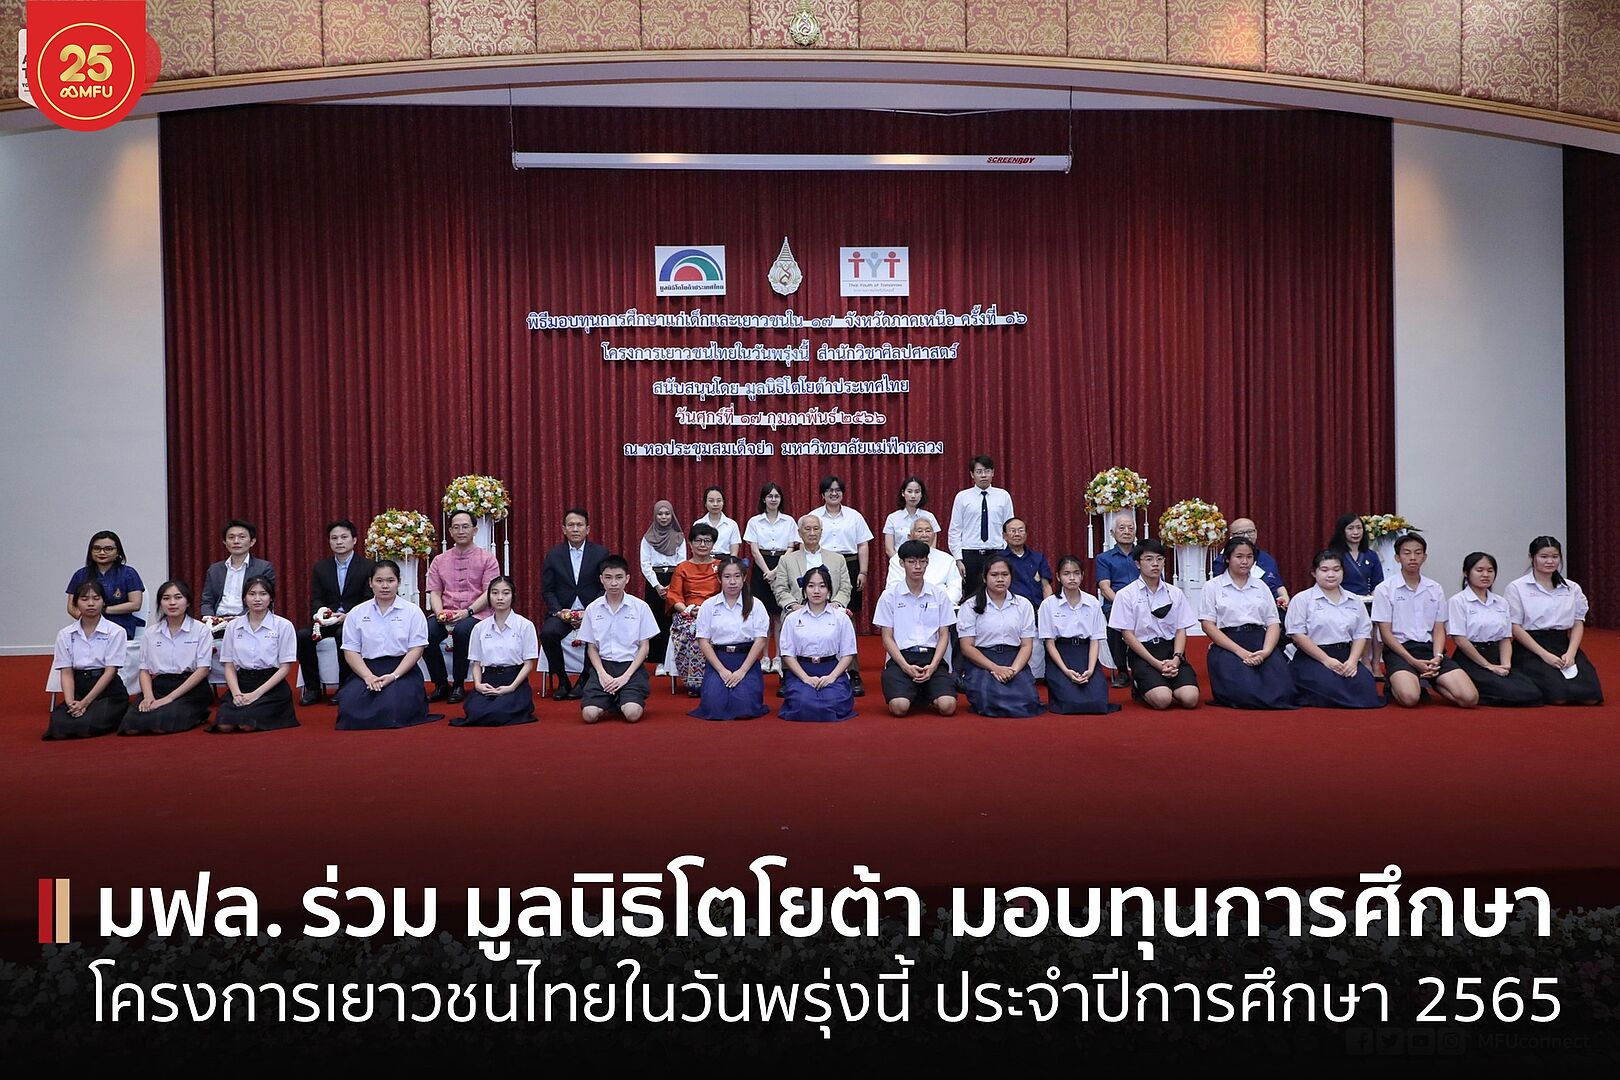 โครงการเยาวชนไทยในวันพรุ่งนี้ มฟล. ร่วมกับ มูลนิธิโตโยต้าประเทศไทย มอบทุนการศึกษาเด็กและเยาวชนไทย 17 จังหวัดภาคเหนือ 295 ทุน รวม 2.2 ล้านบาท